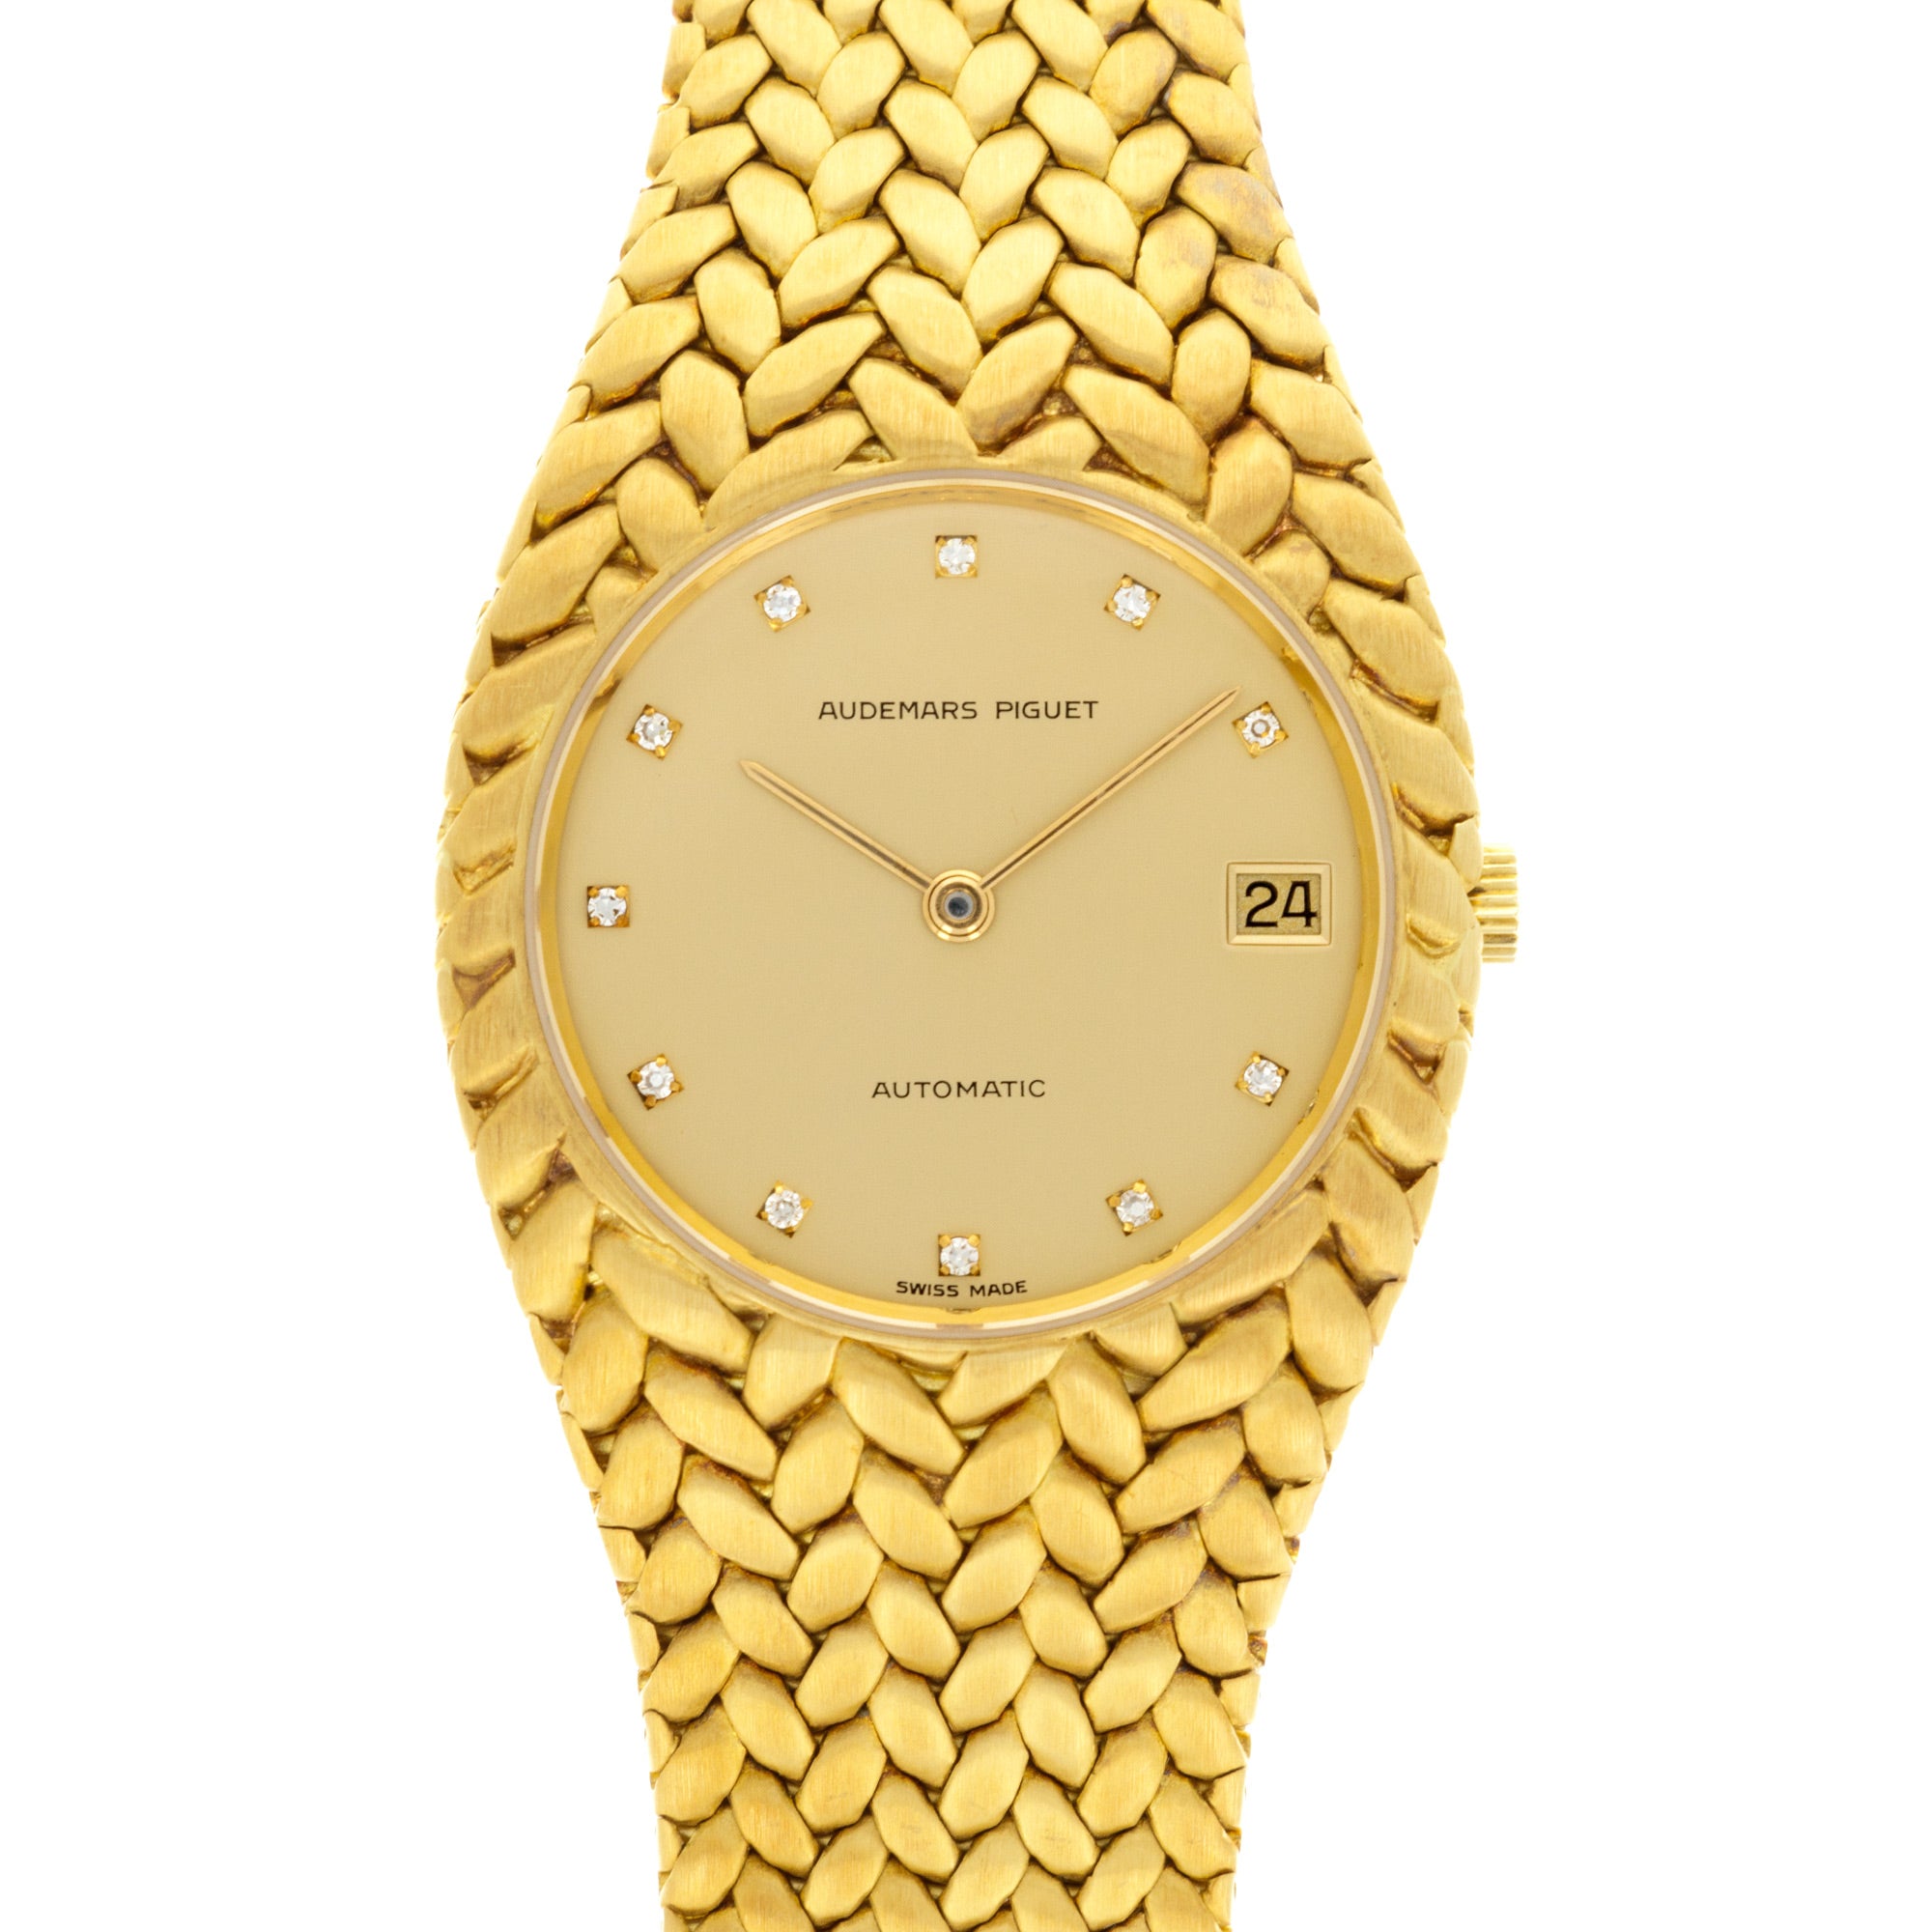 Audemars Piguet - Audemars Piguet Yellow Gold Cobra Ref. 5403 - The Keystone Watches